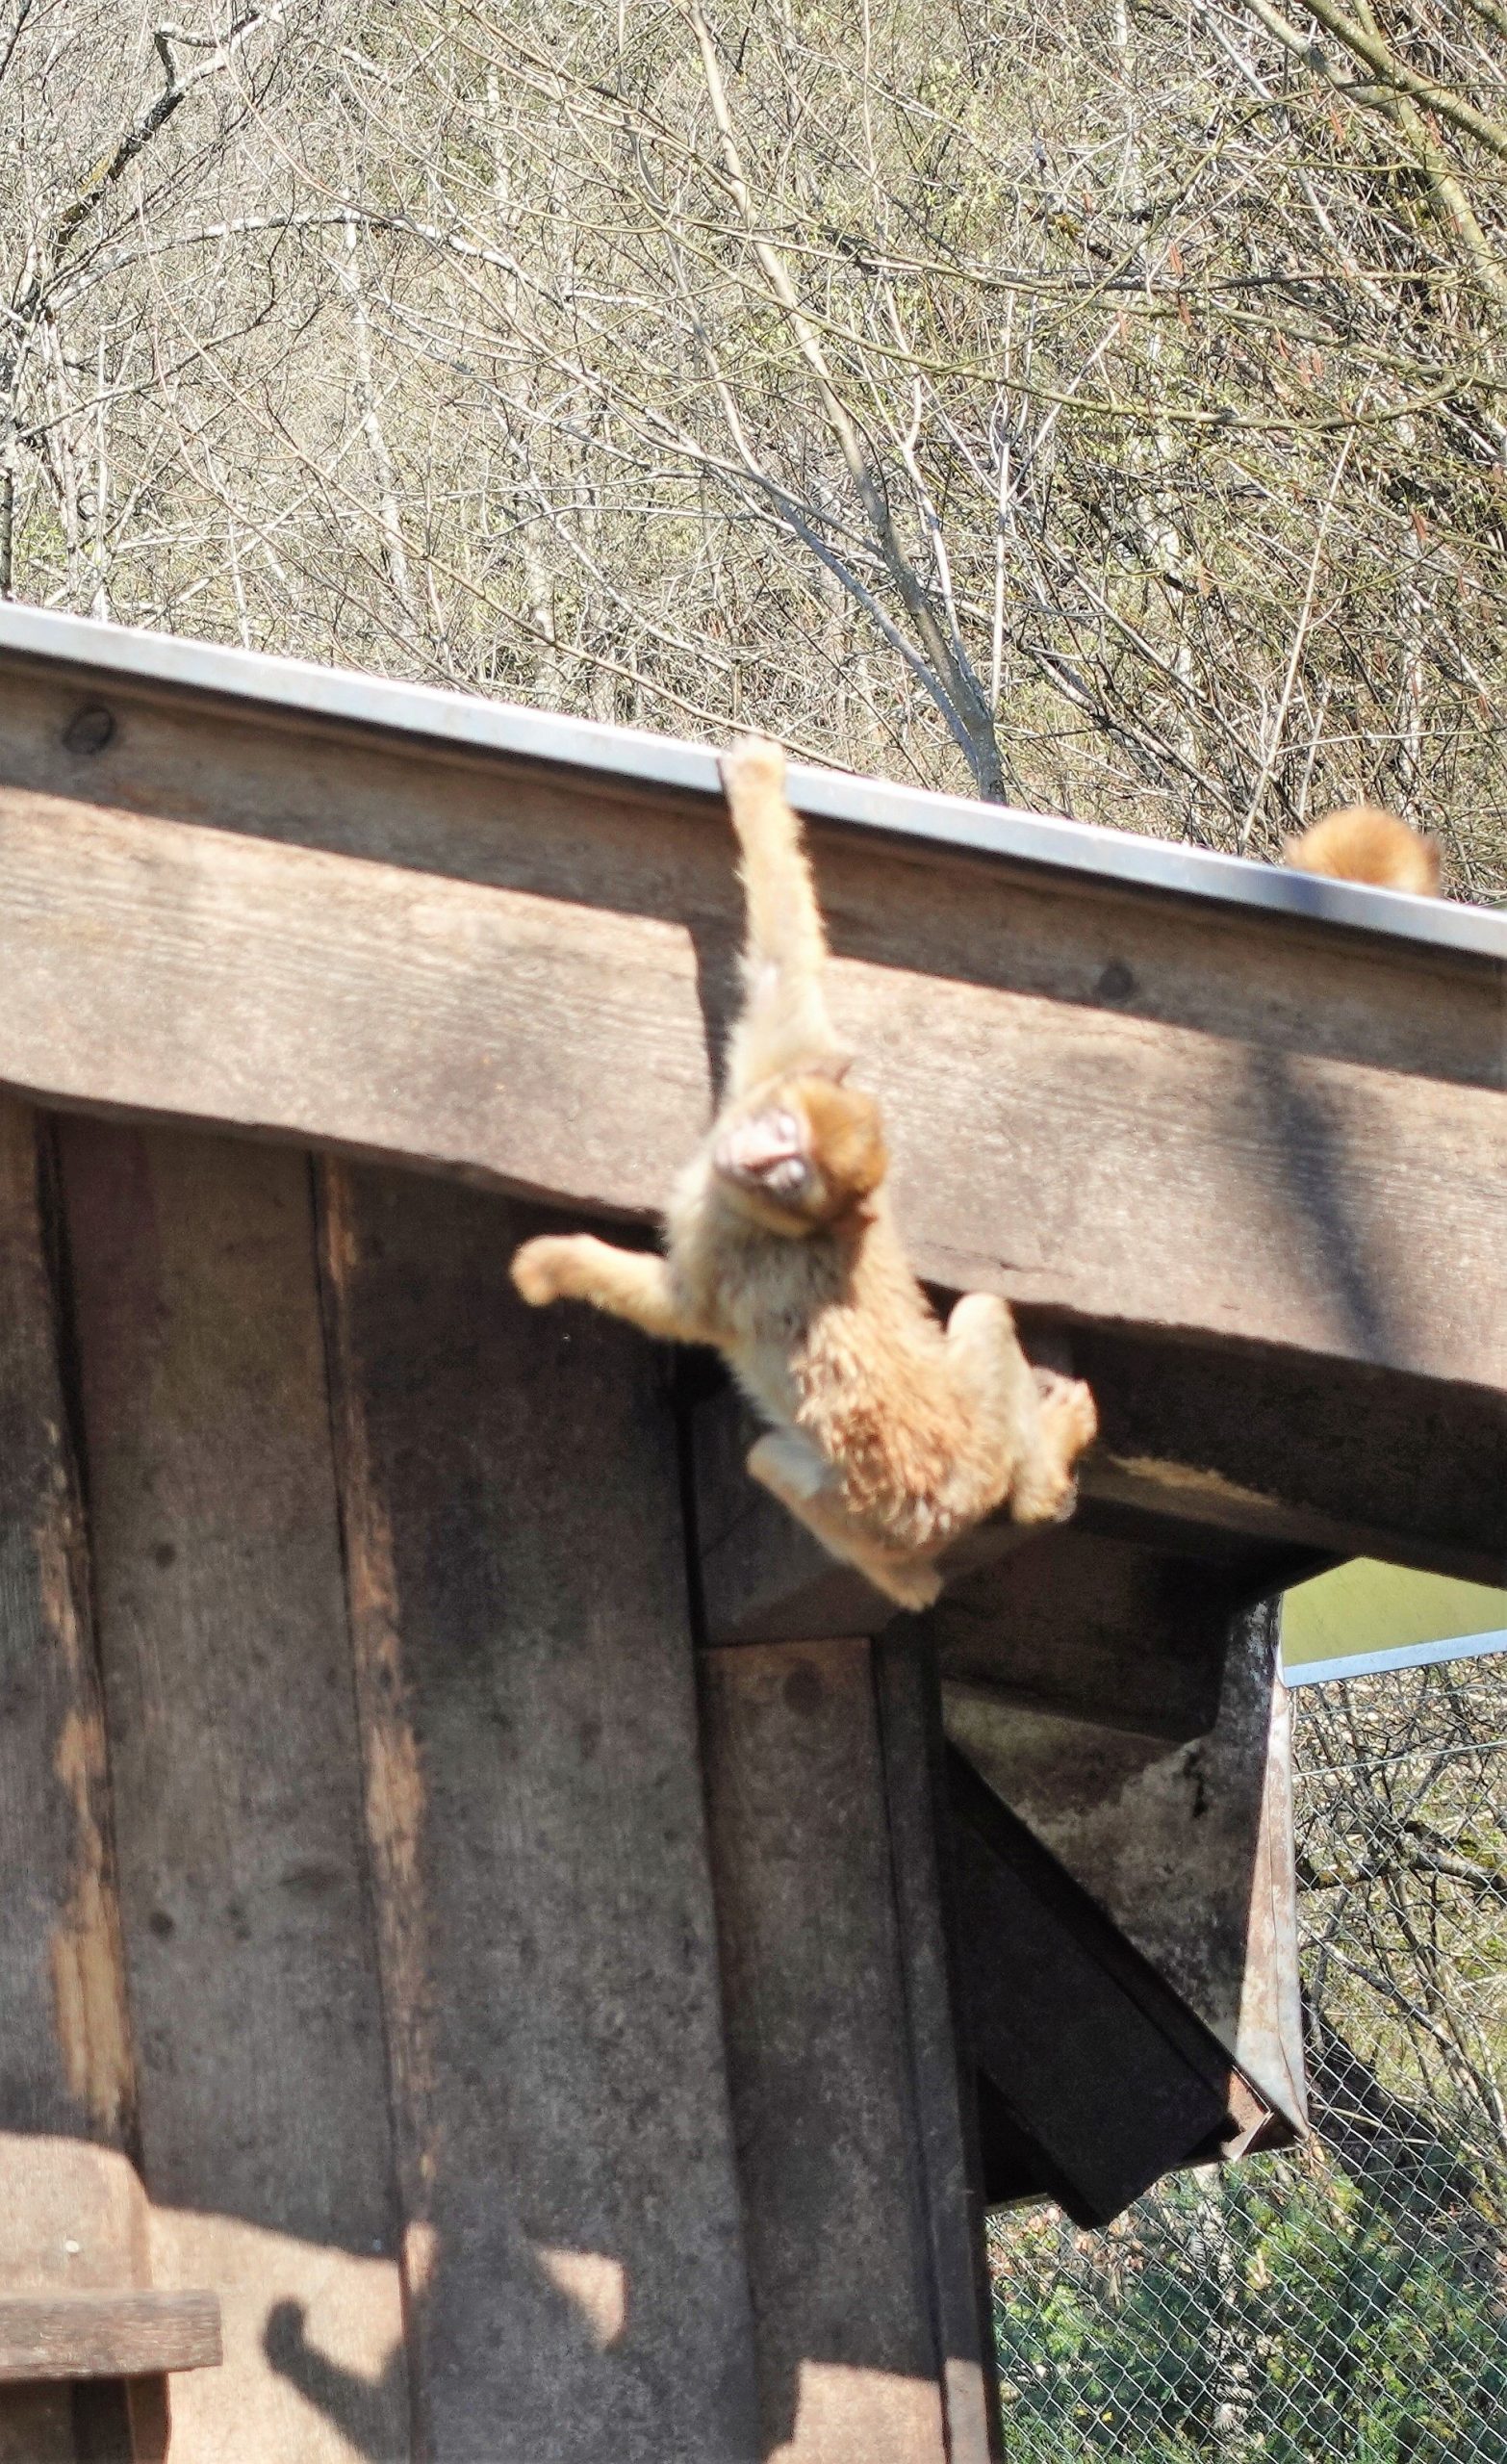 Affen spielen auf Dach im Raritaetenzoo Ebbs in Tirol